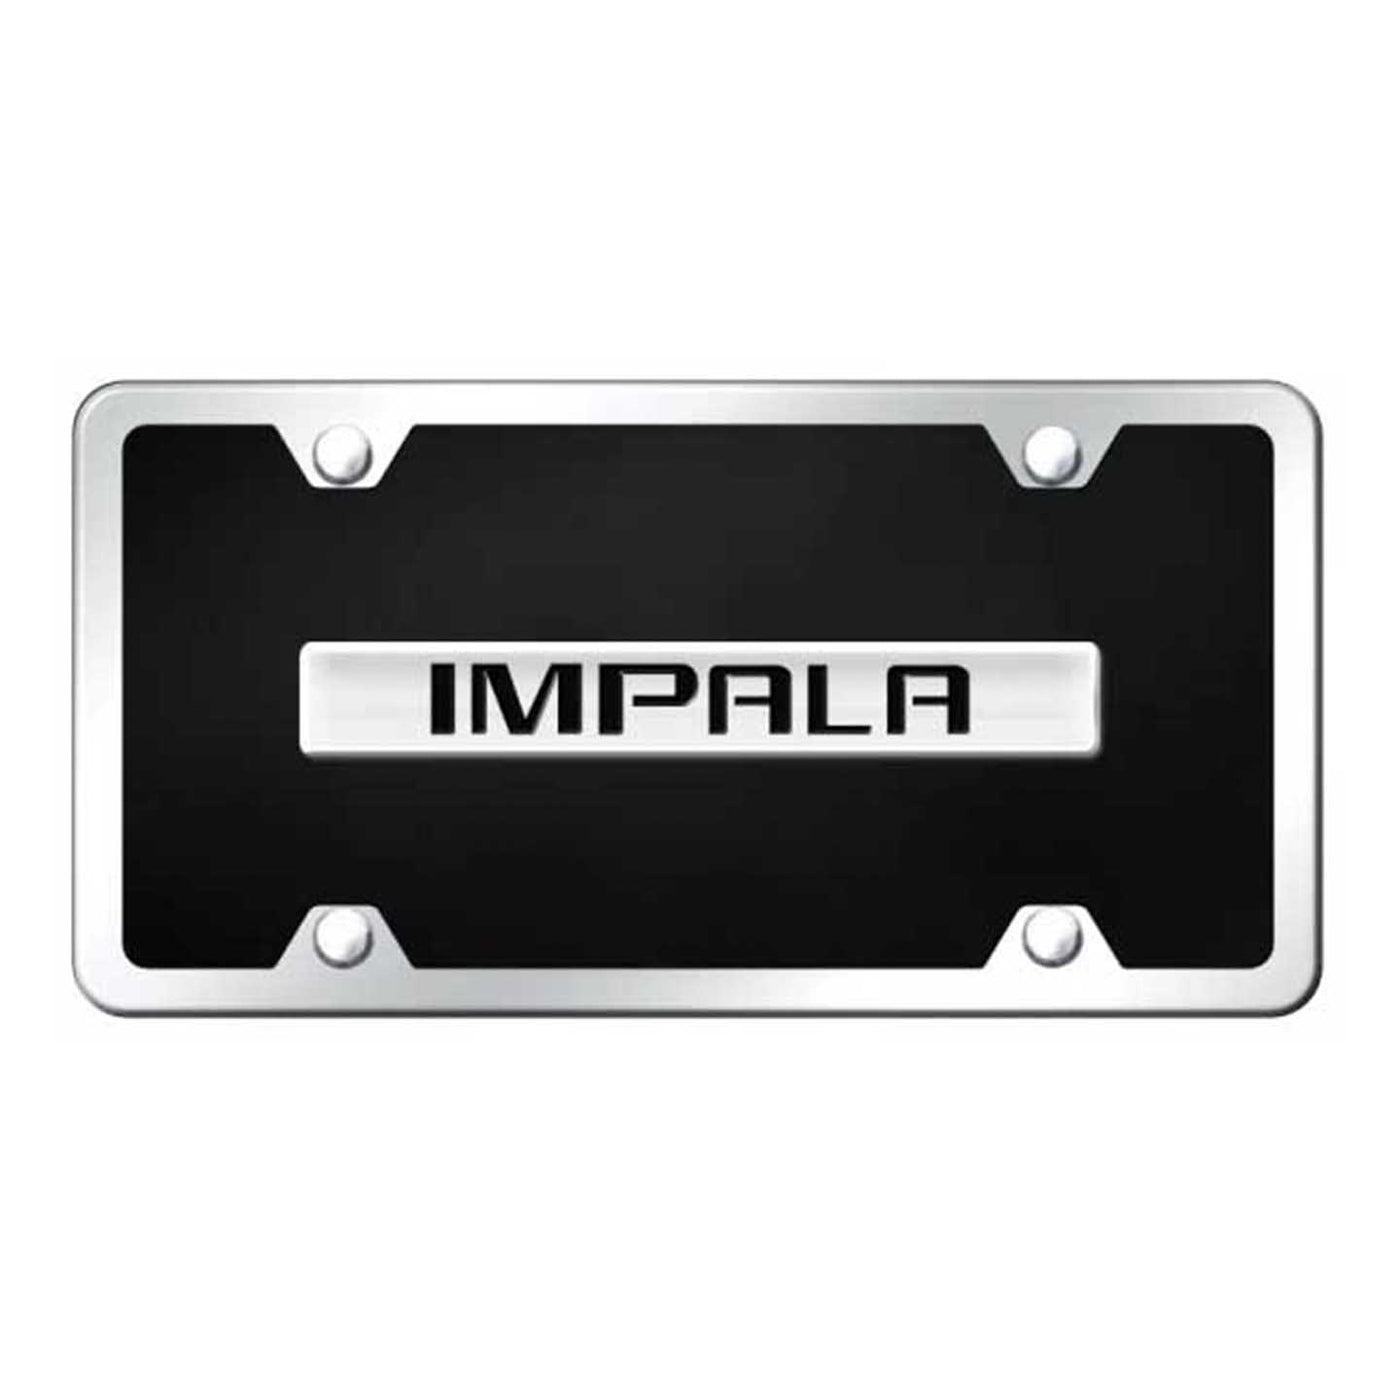 Impala Name Acrylic Kit - Chrome on Black